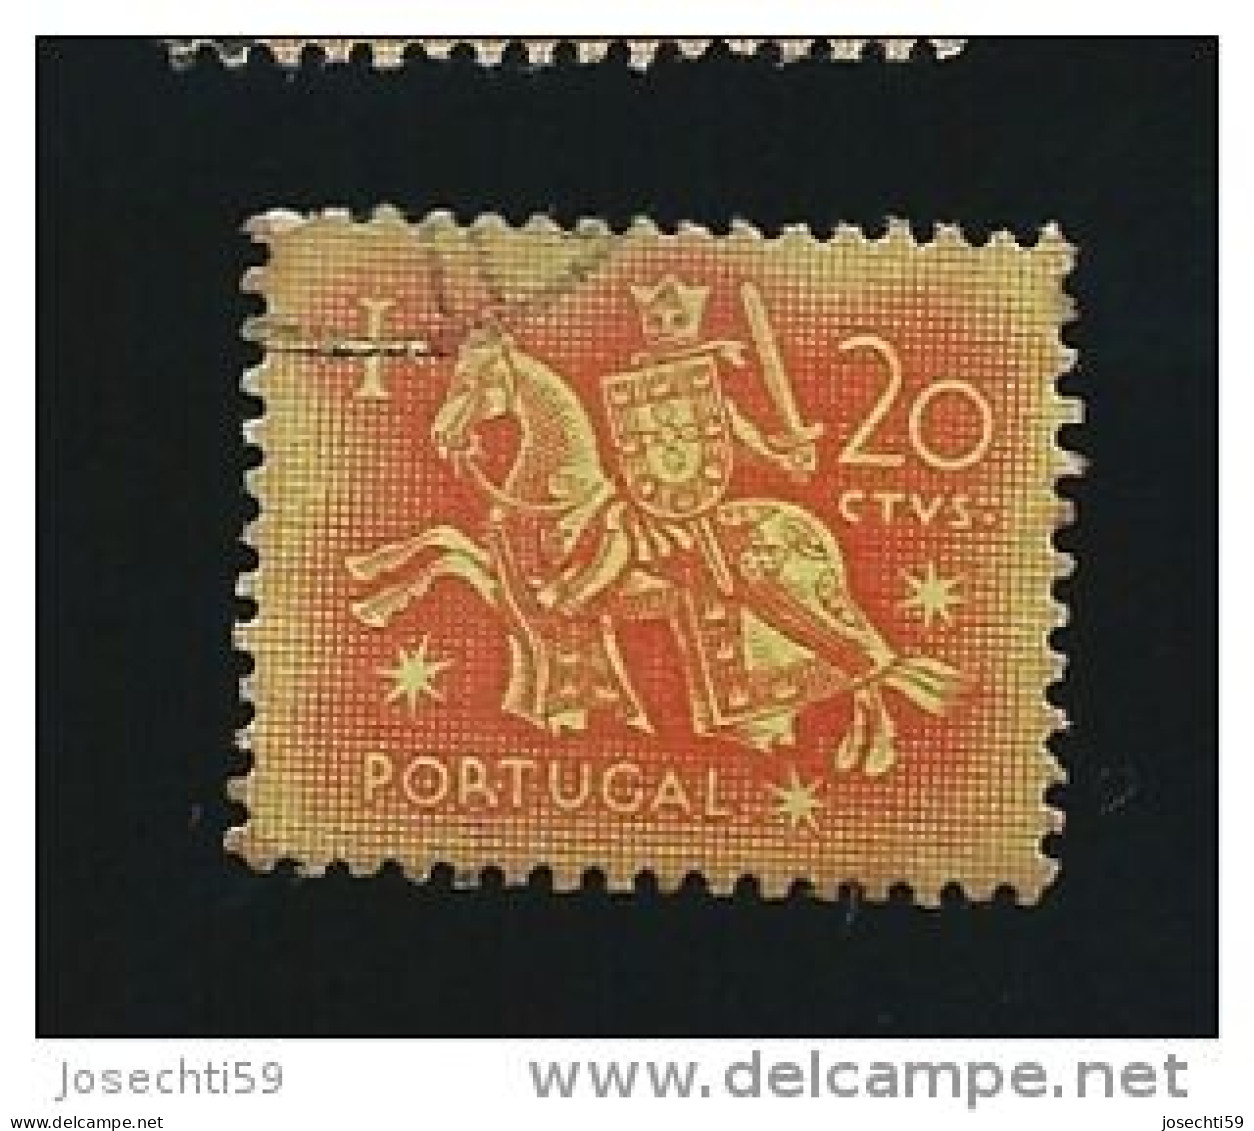 N° 776 Sceau Du Roi Denis 20 Rouge Orange S Jaune    Timbre    Portugal Oblitéré 1953 - Used Stamps